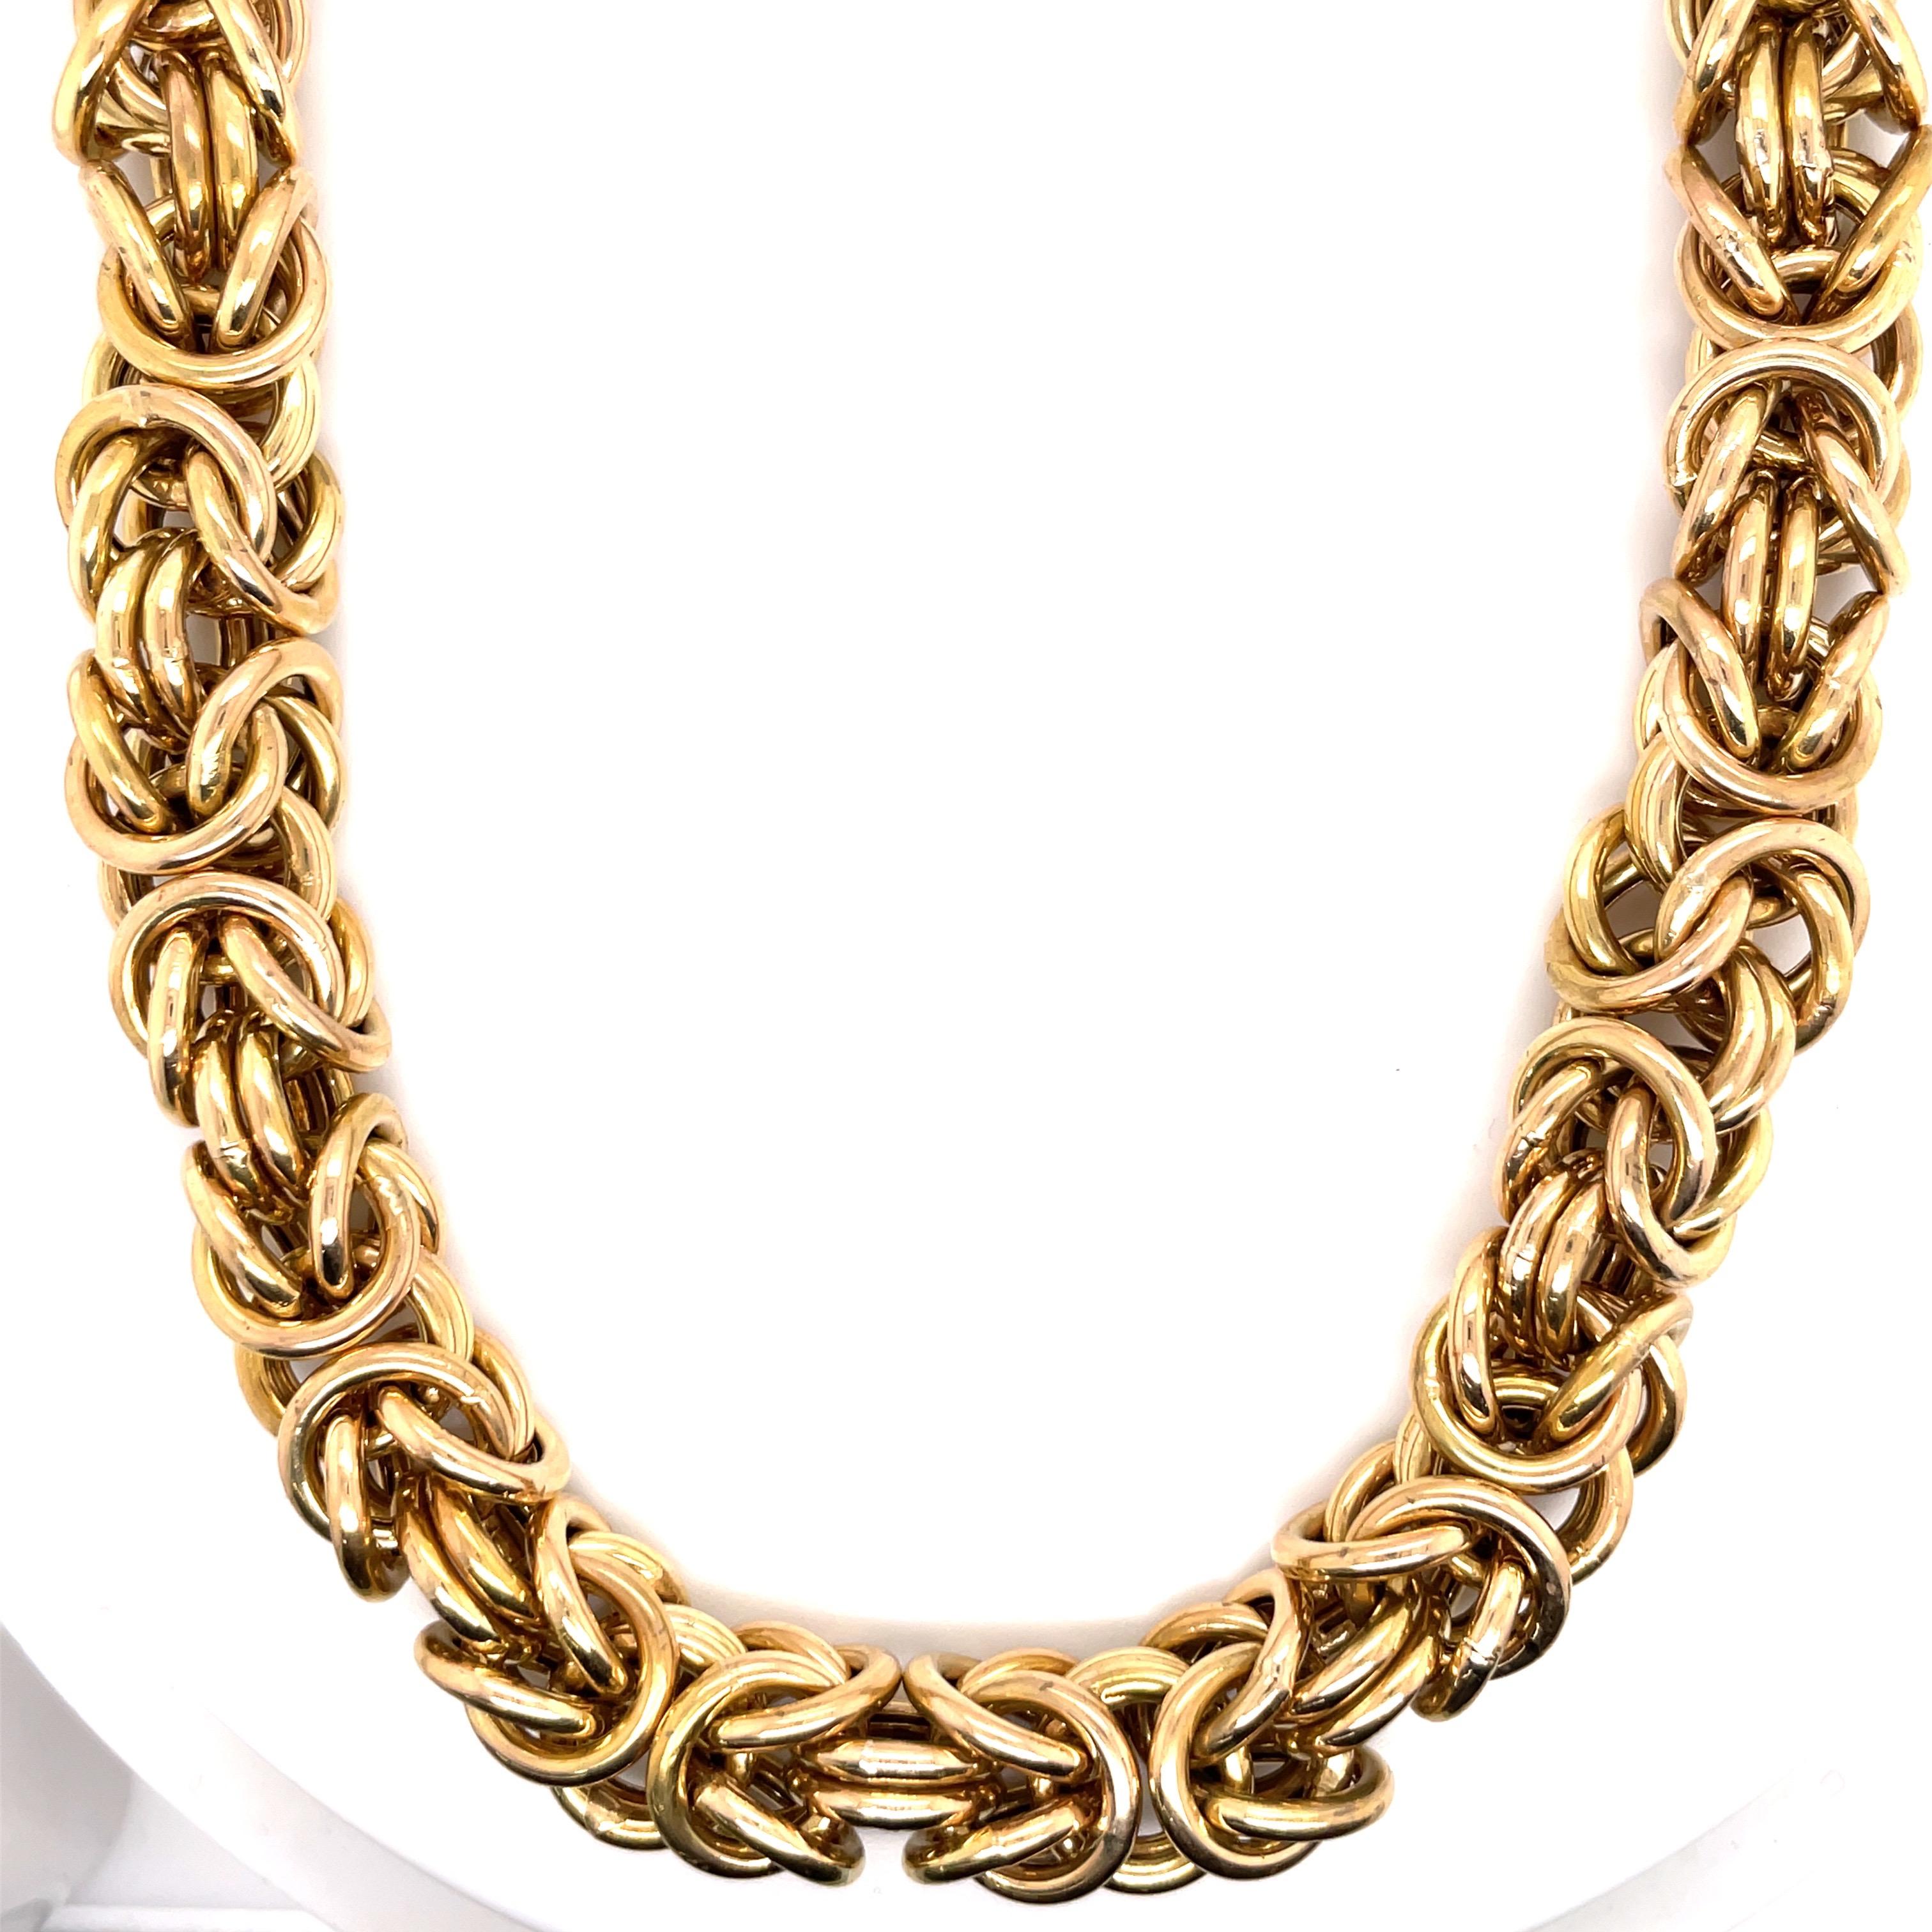 collier en or jaune 14 carats comportant un large lien de style byzantin mesurant 17.5 pouces et pesant 105.6 grammes.
Très confortable sur le cou. 